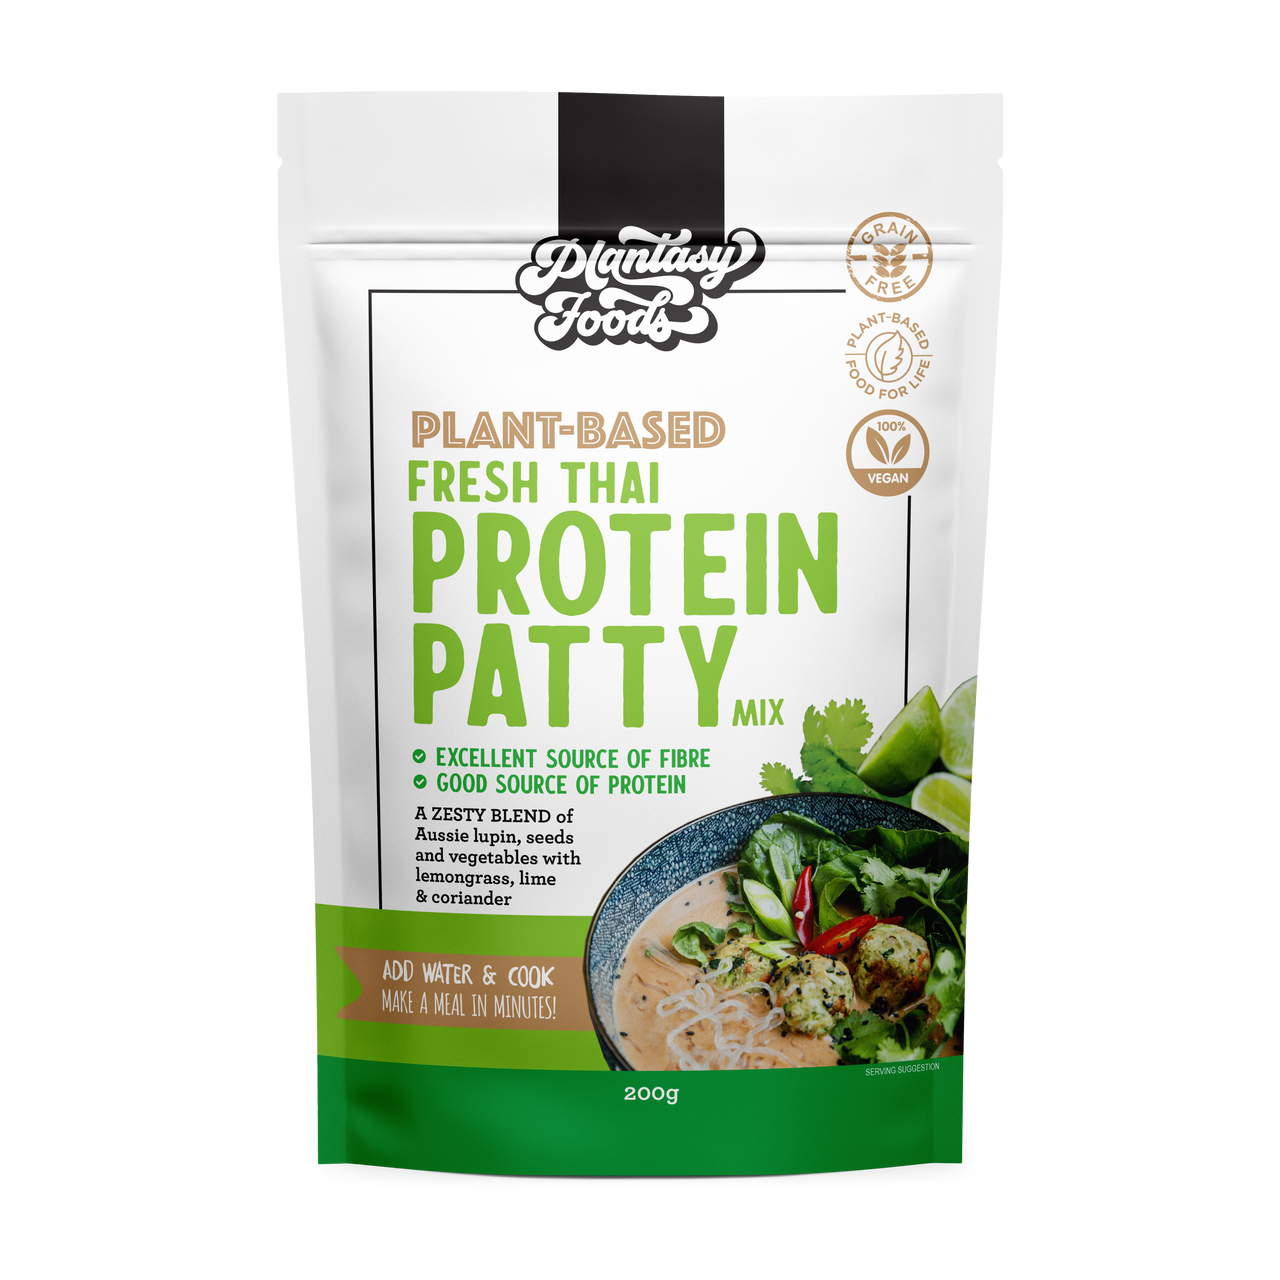 Plantasy Foods Vegan Protein Patty Mix - Fresh Thai